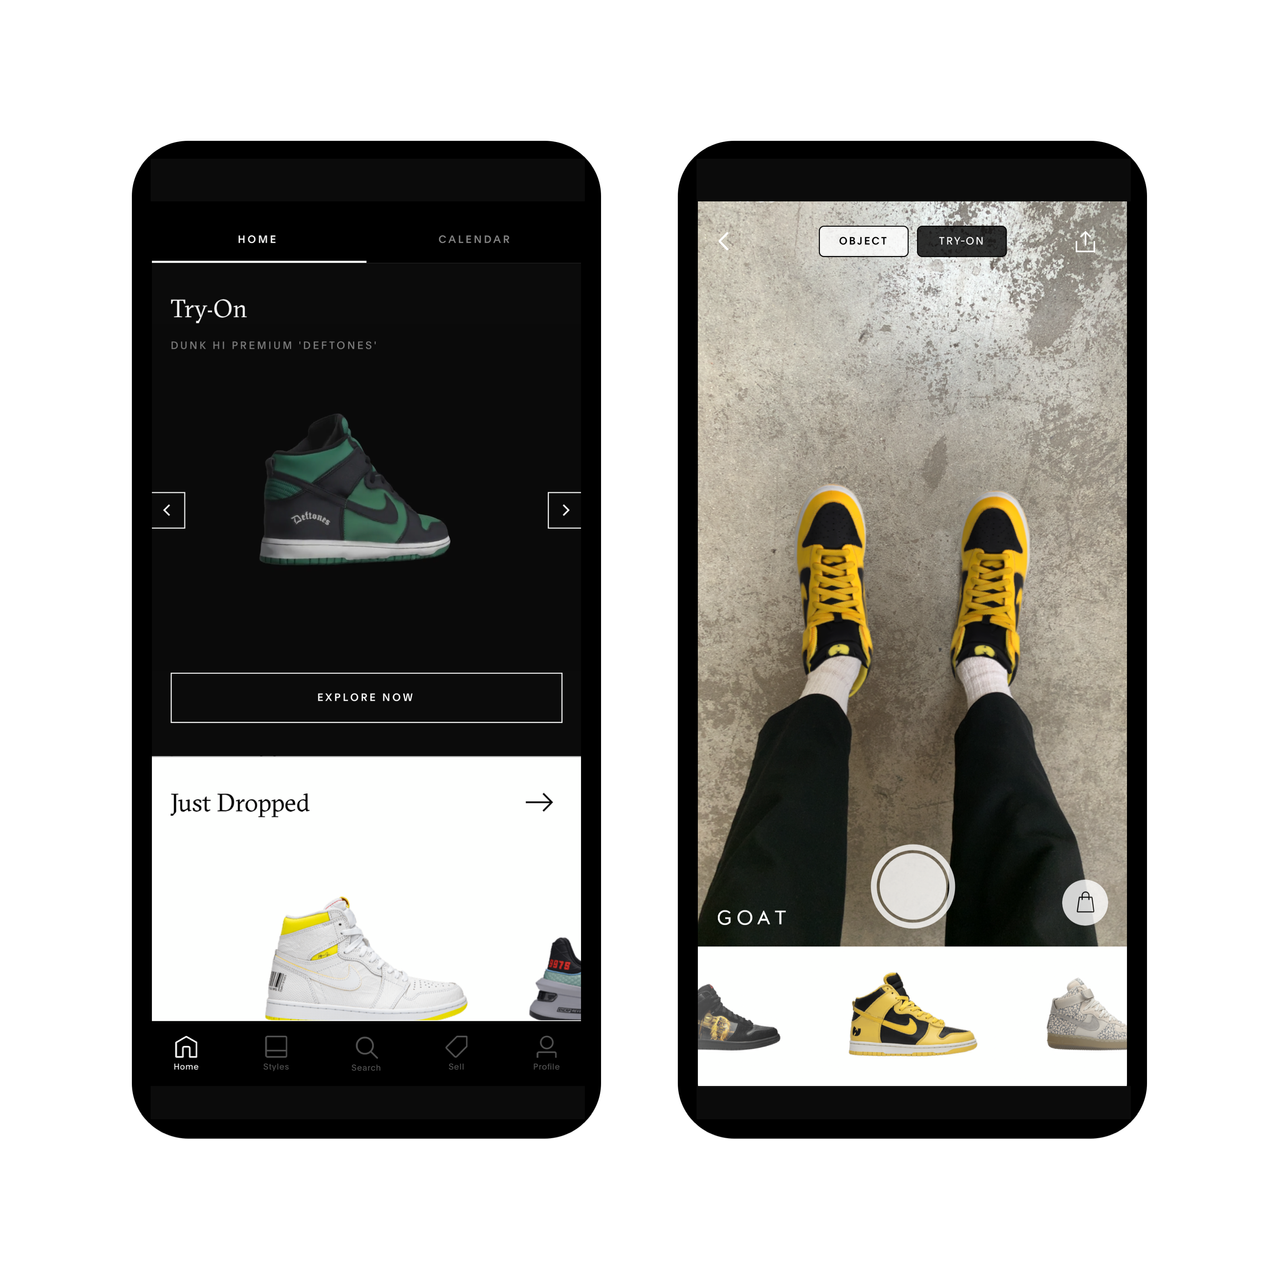 Imagem do app da Nike que mostra uma pessoa provando o tênis de forma virtual. No menu inferior, há opções de tênis a serem escolhidos.